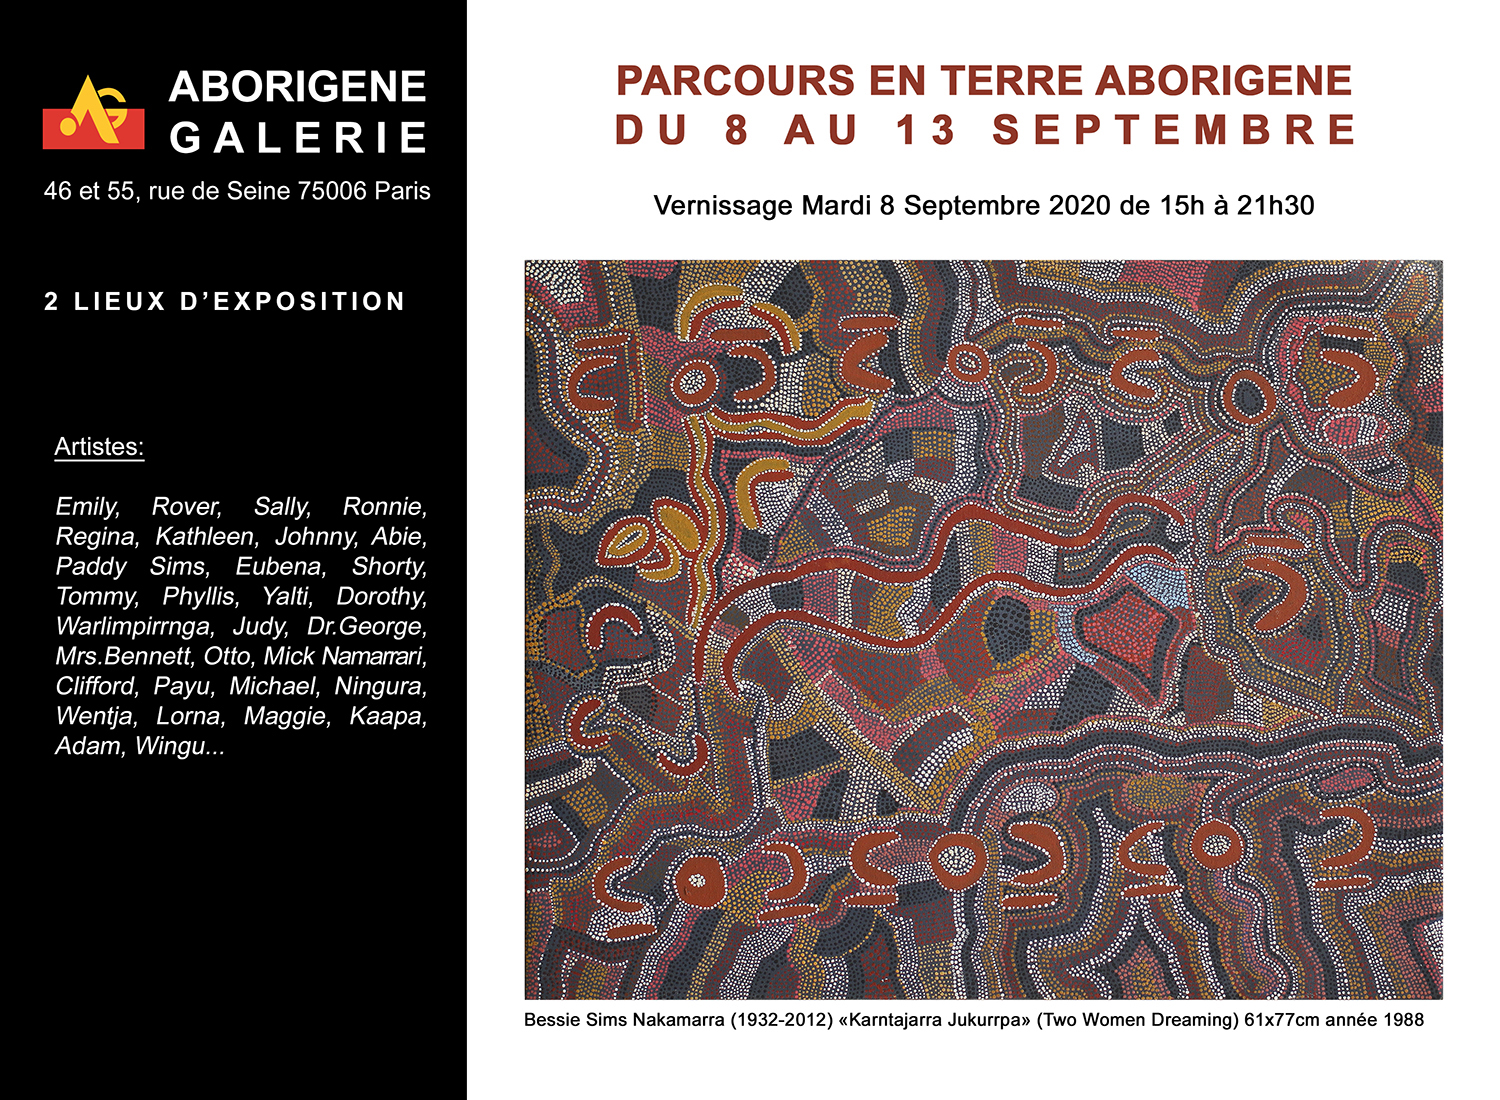 Parcours en Terre Aborigène du 8 au 13 Septembre 2020 (2 lieux d’exposition) 46 et 55 rue de Seine (face à la galerie)